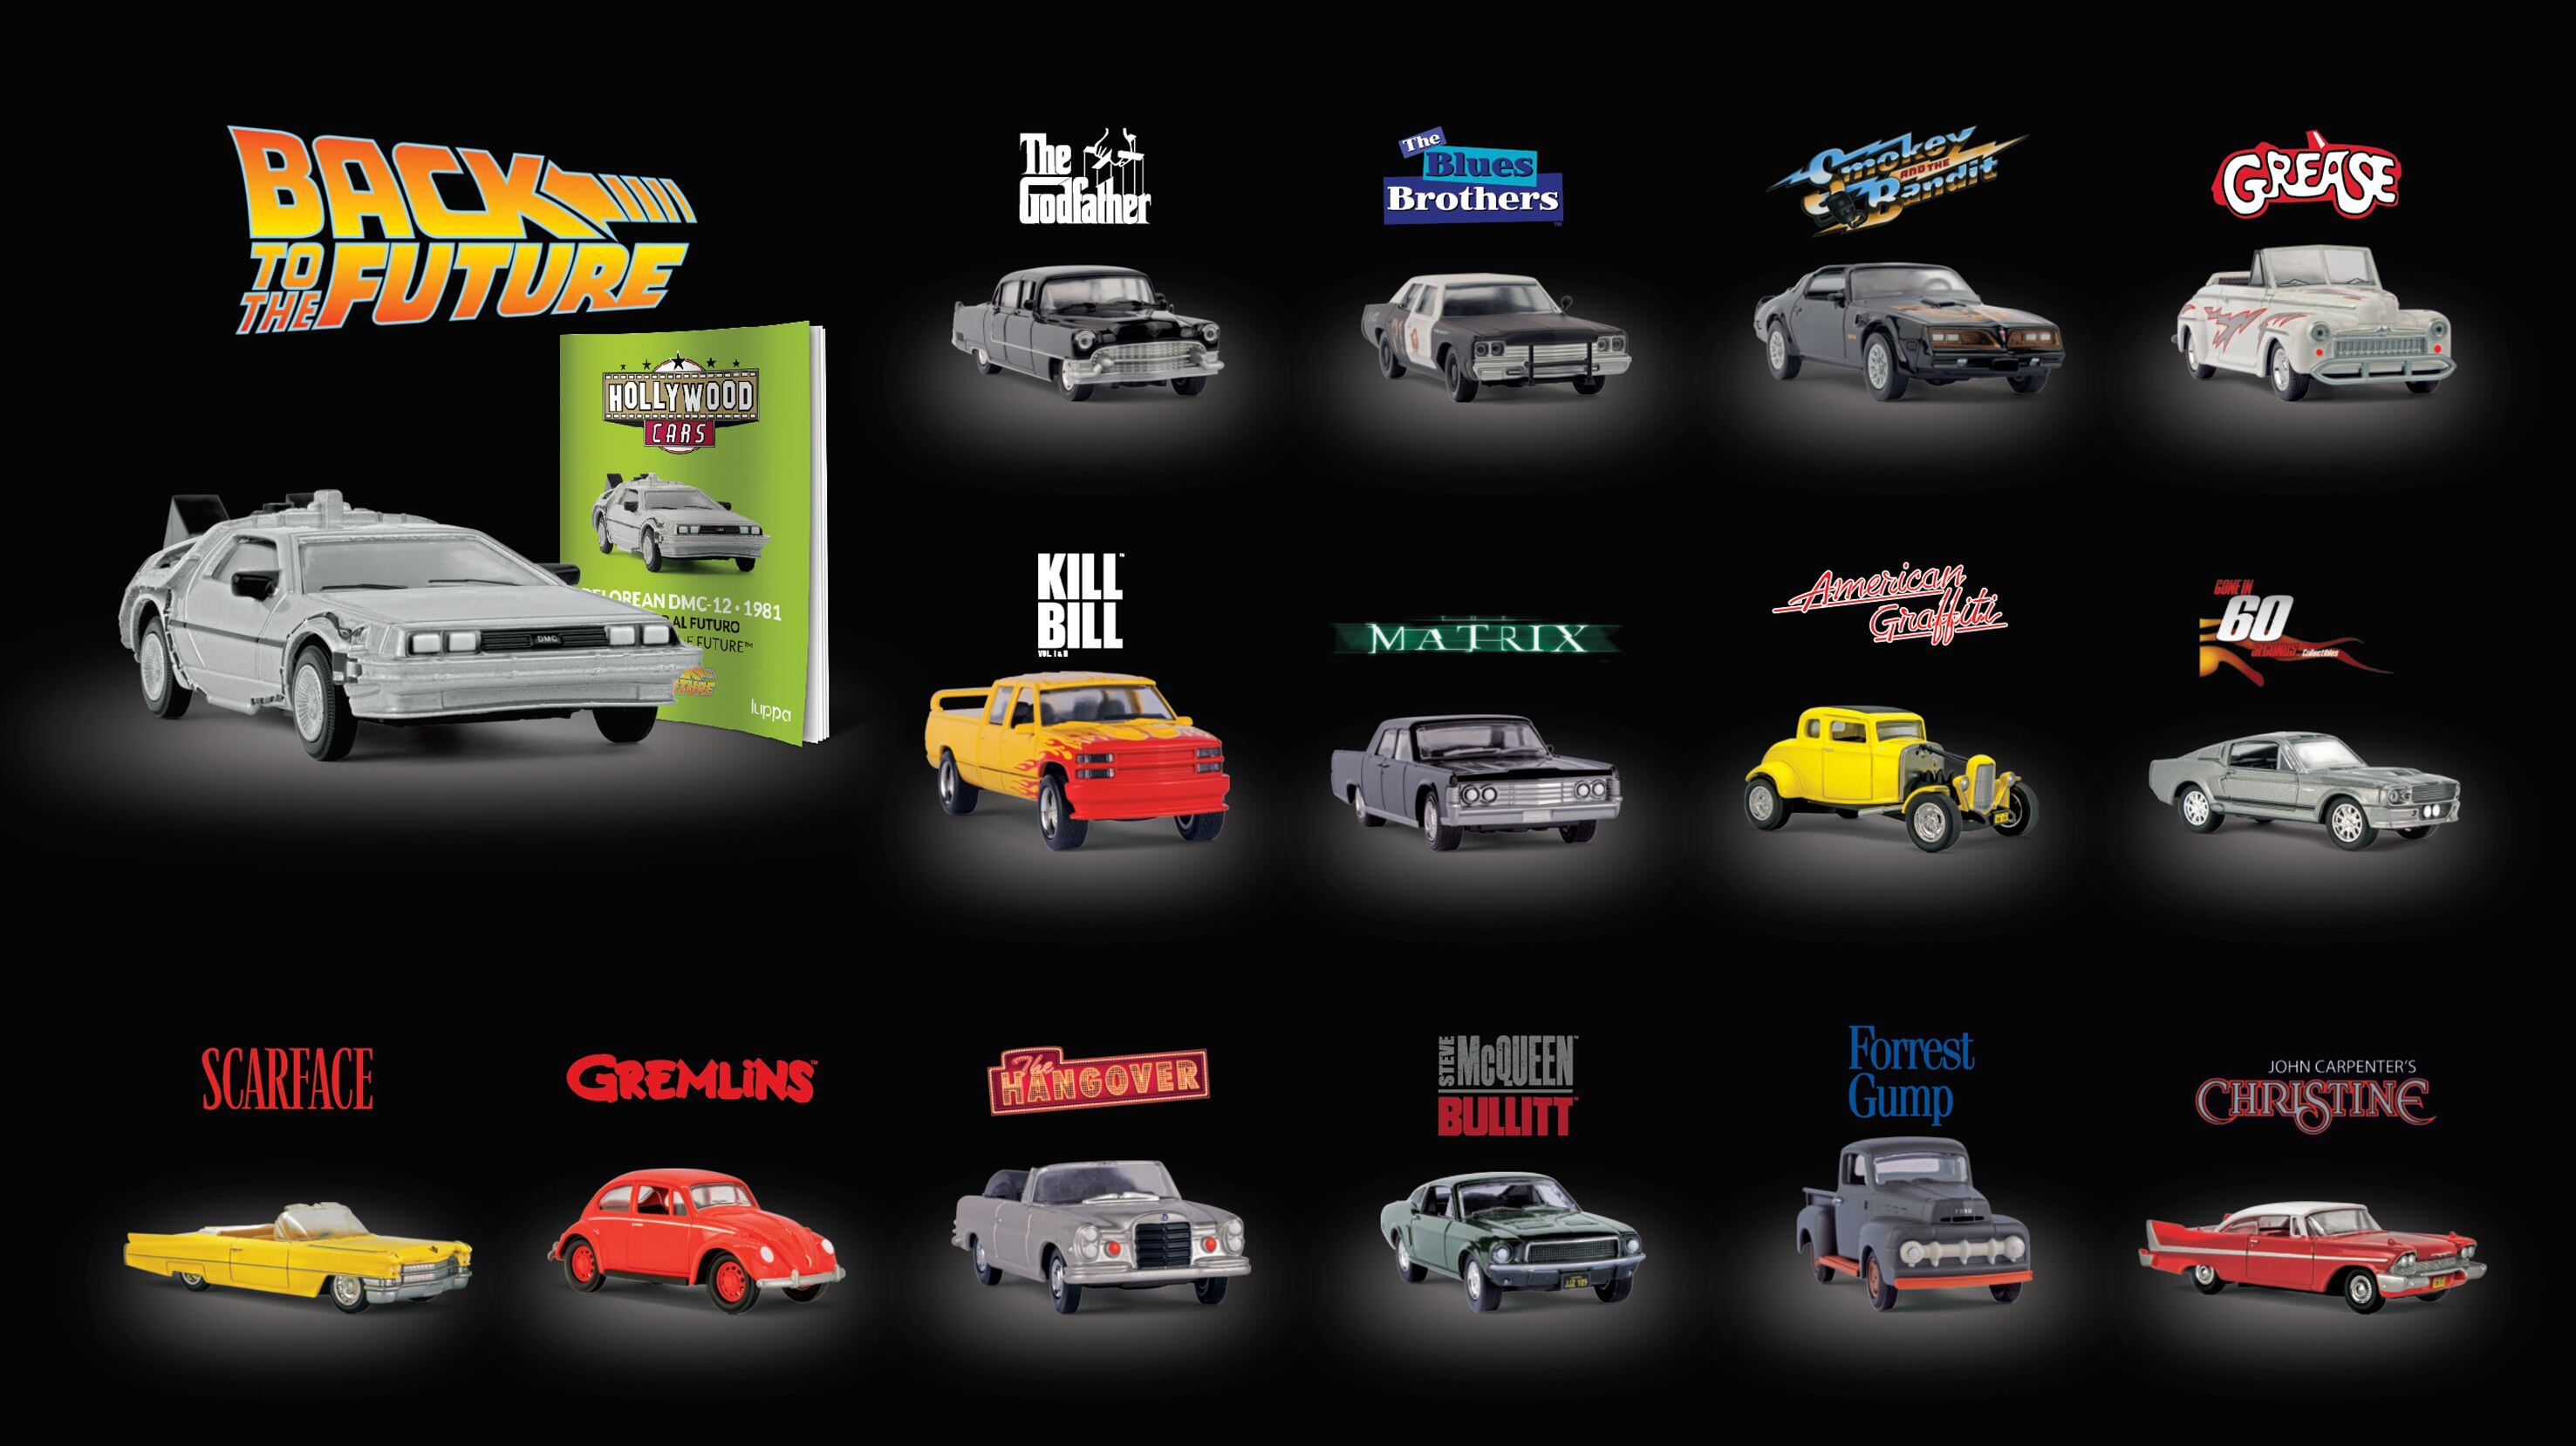 Cada uno de los 15 autos representa a una película emblemática de Hollywood.